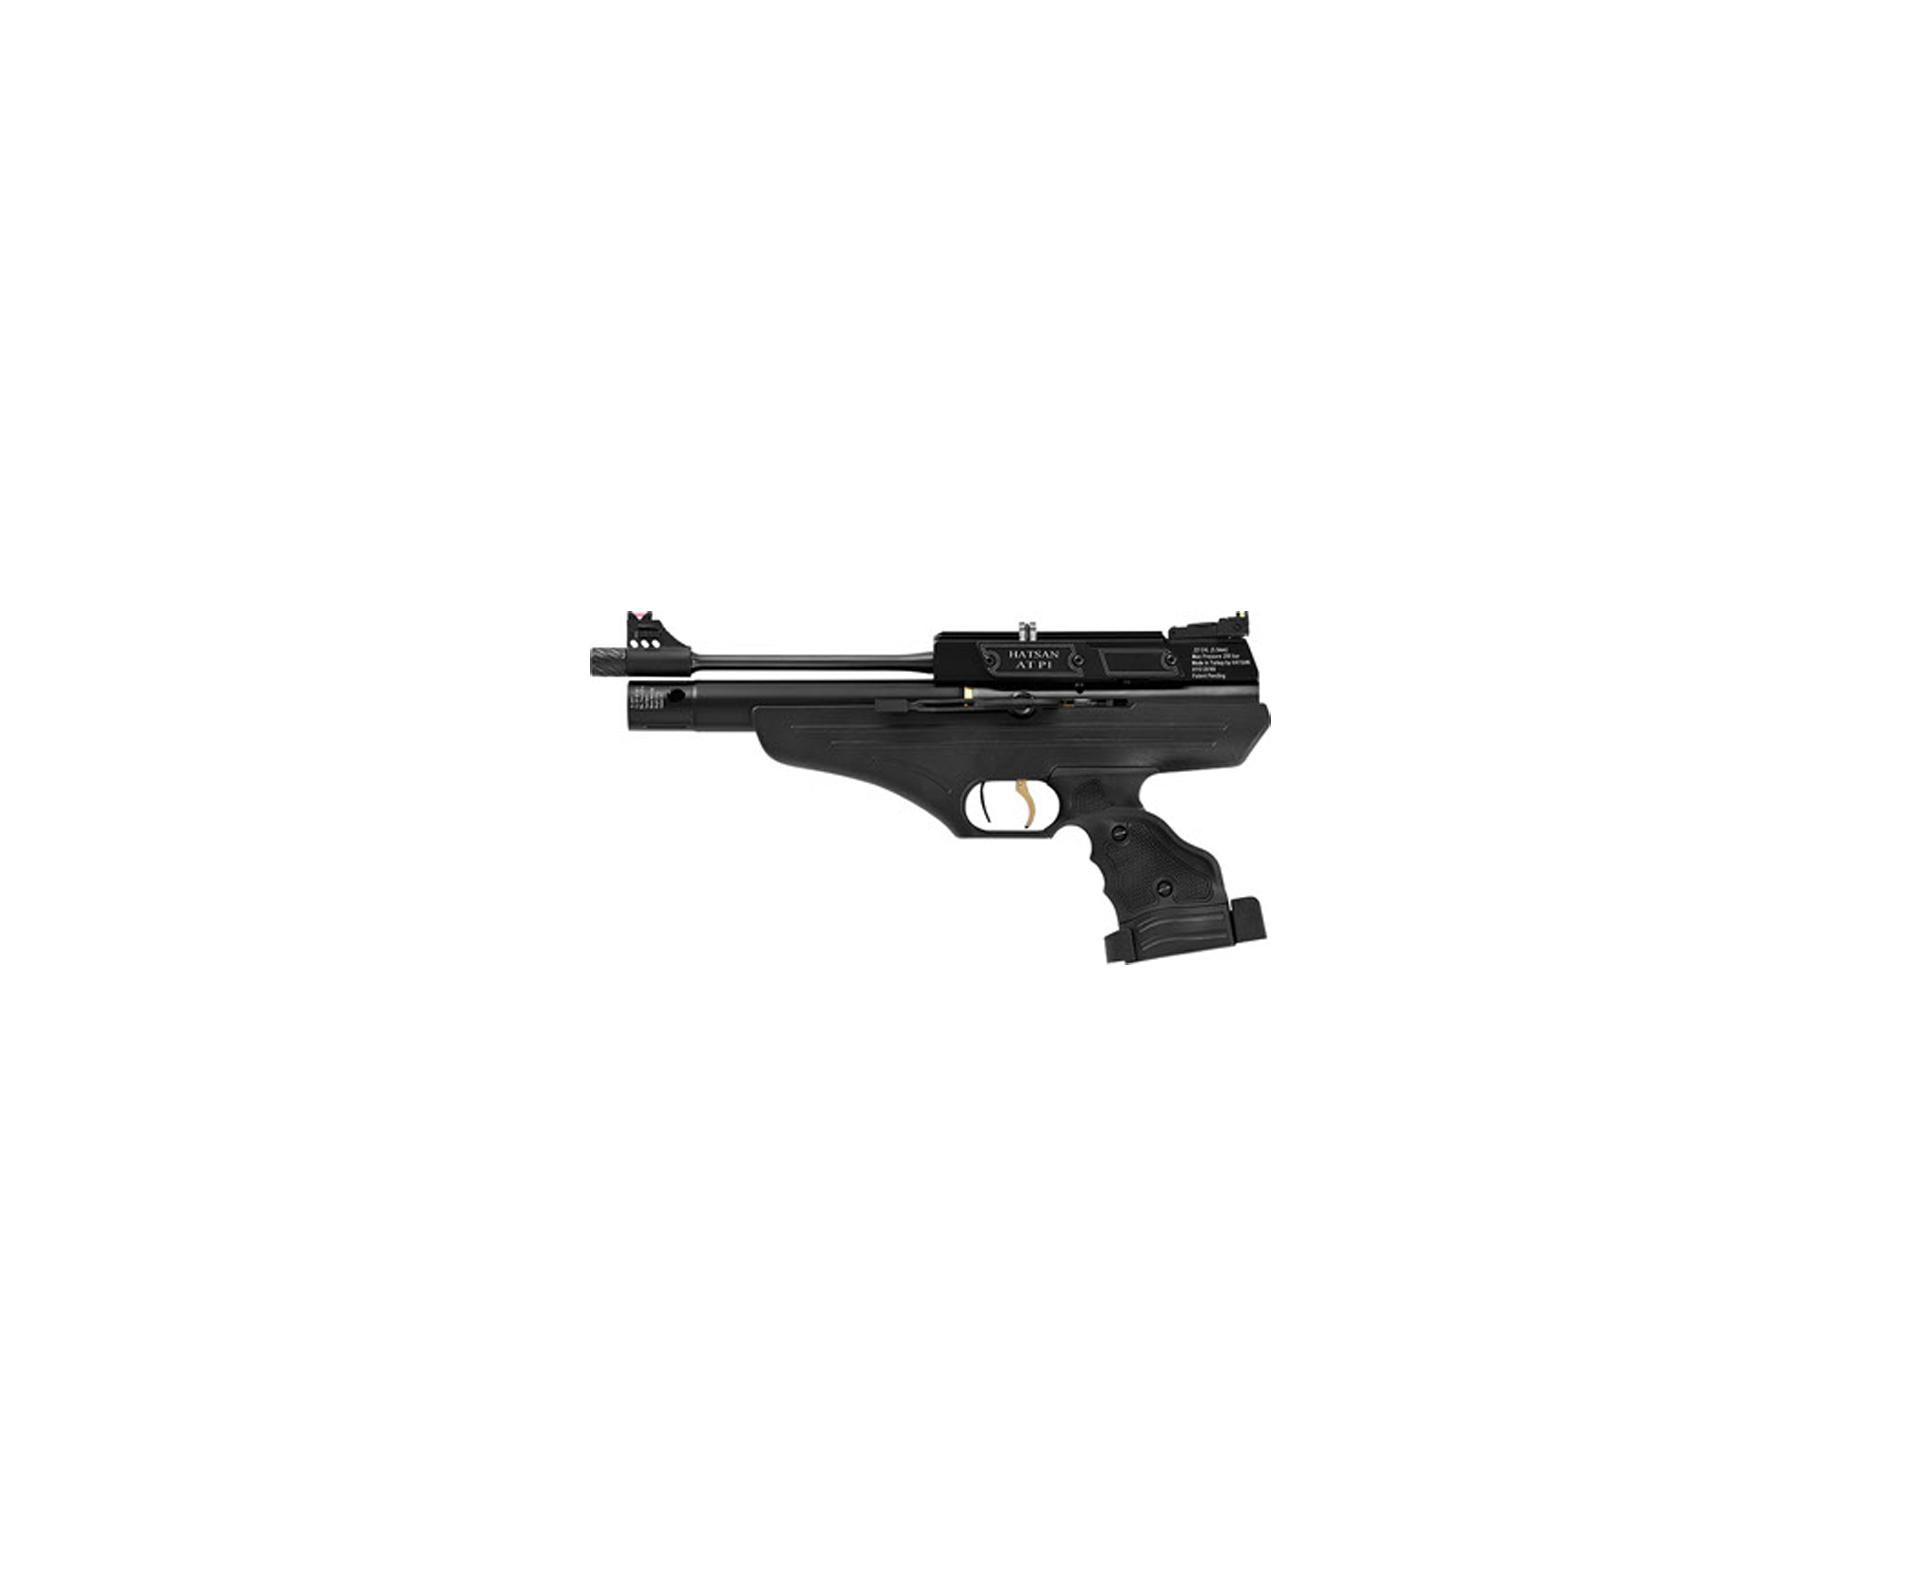 Pistola De Pressão Hatsan At P1 - Calibre 5,5 Mm - Pcp